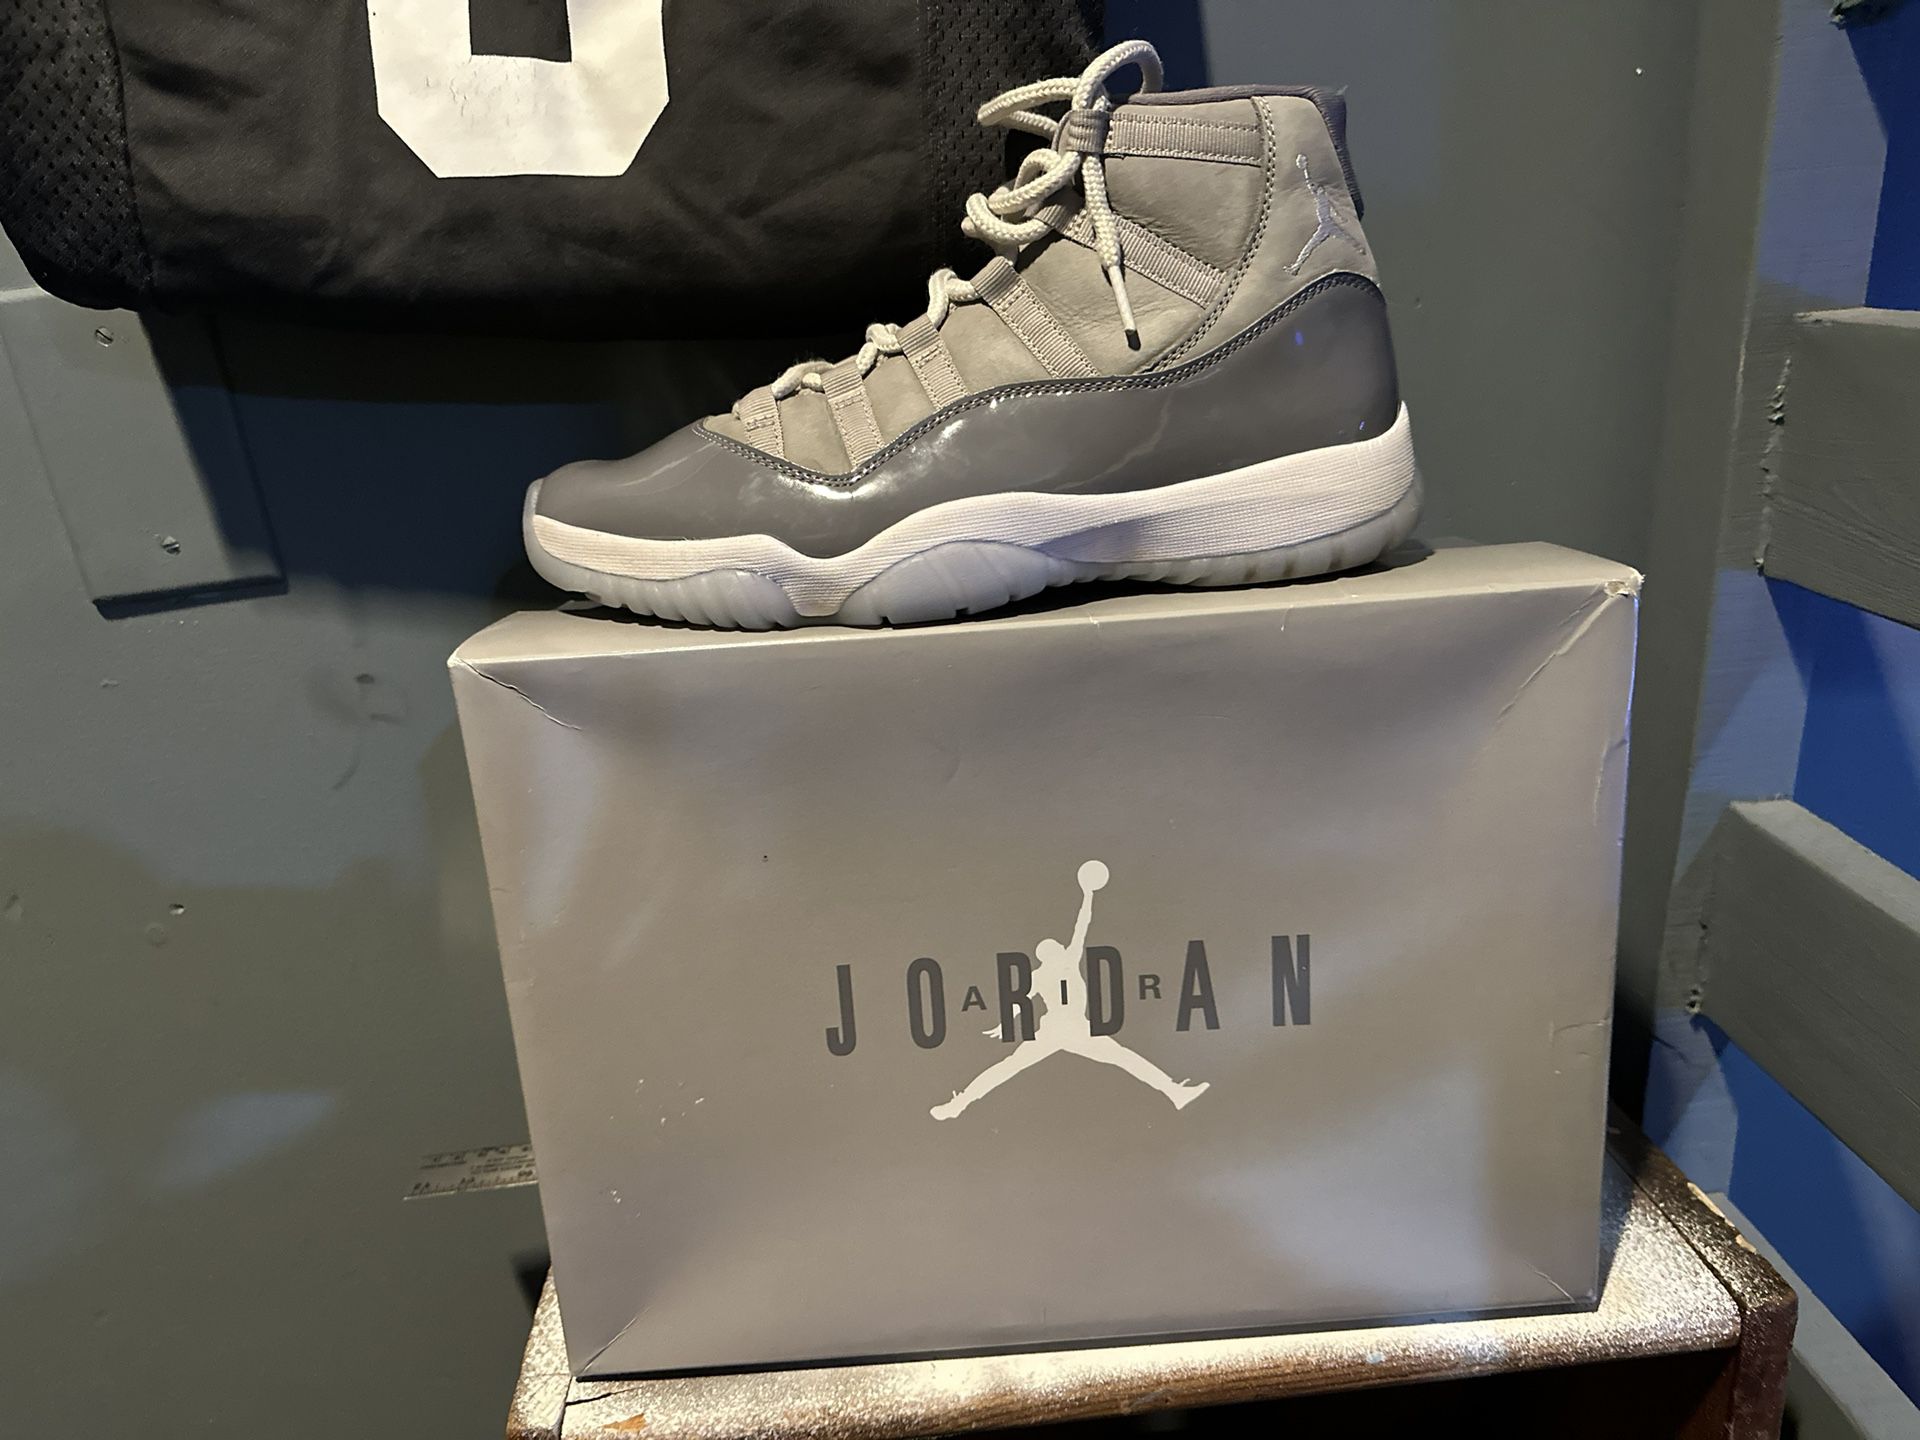 Jordan 11 Size 10